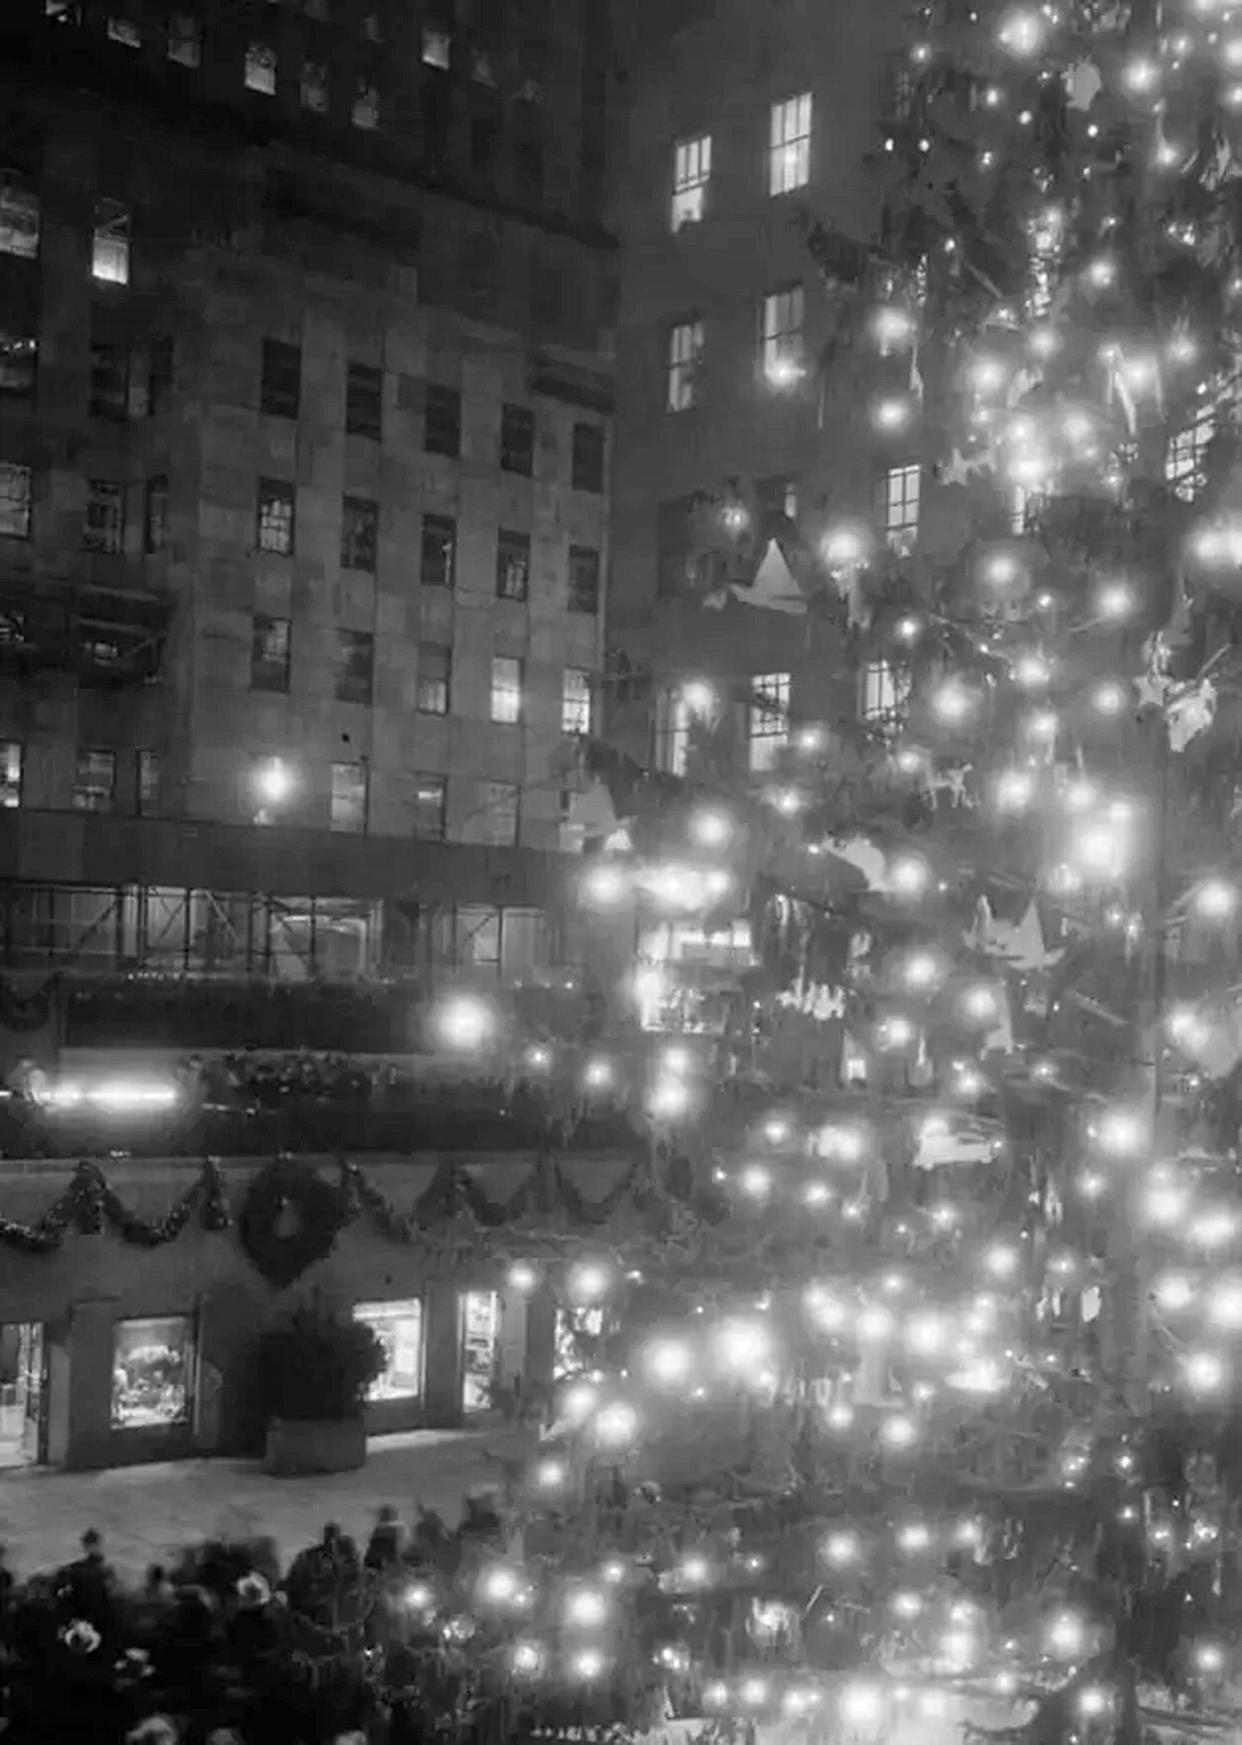 The Rockefeller Center Christmas Tree in 1933 (Rockefeller Center)